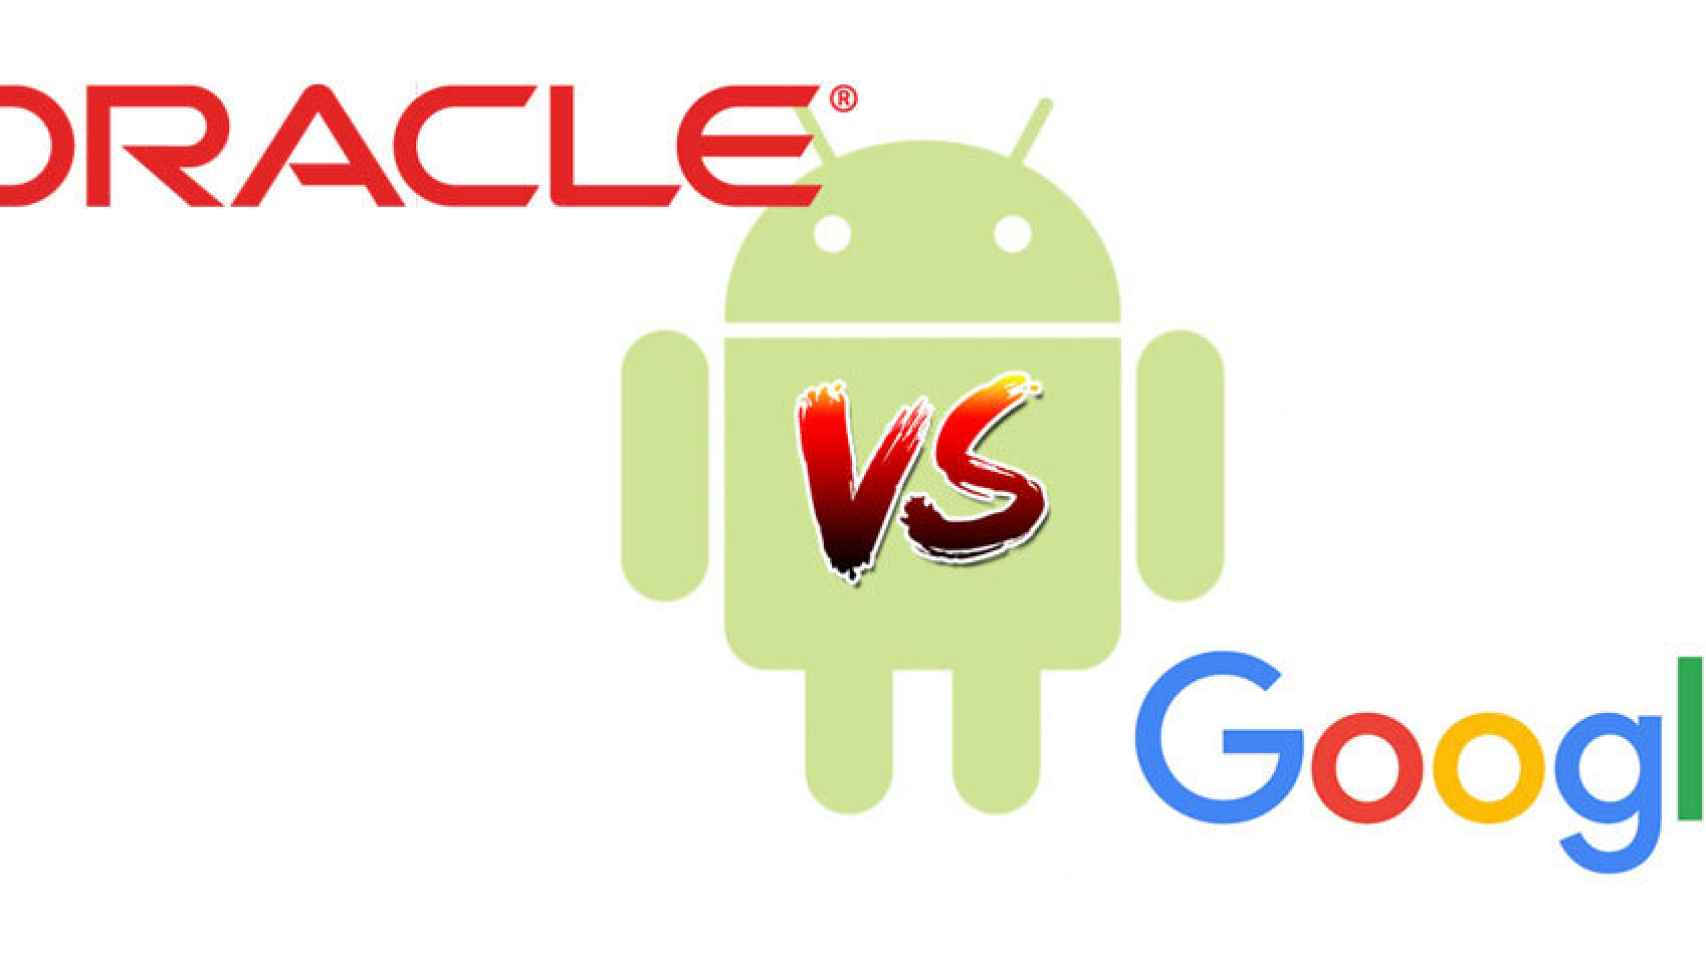 La guerra entre Google y Oracle por Android y Java continúa